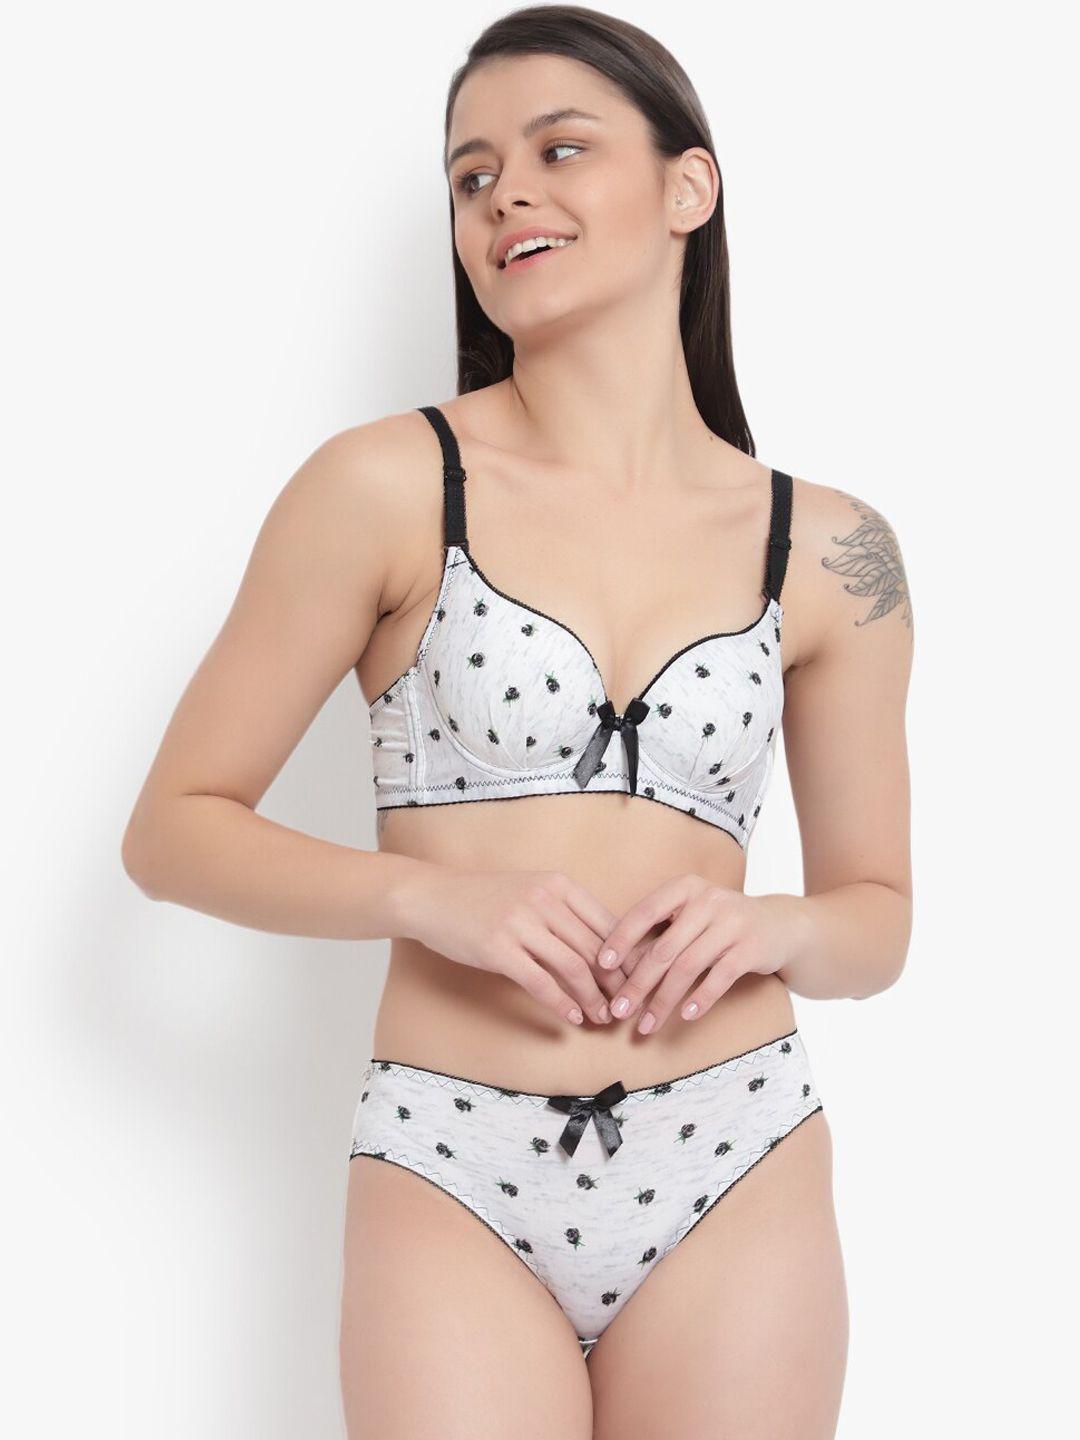 brachy women white & black printed cotton lingerie set bca_set2112a-30a